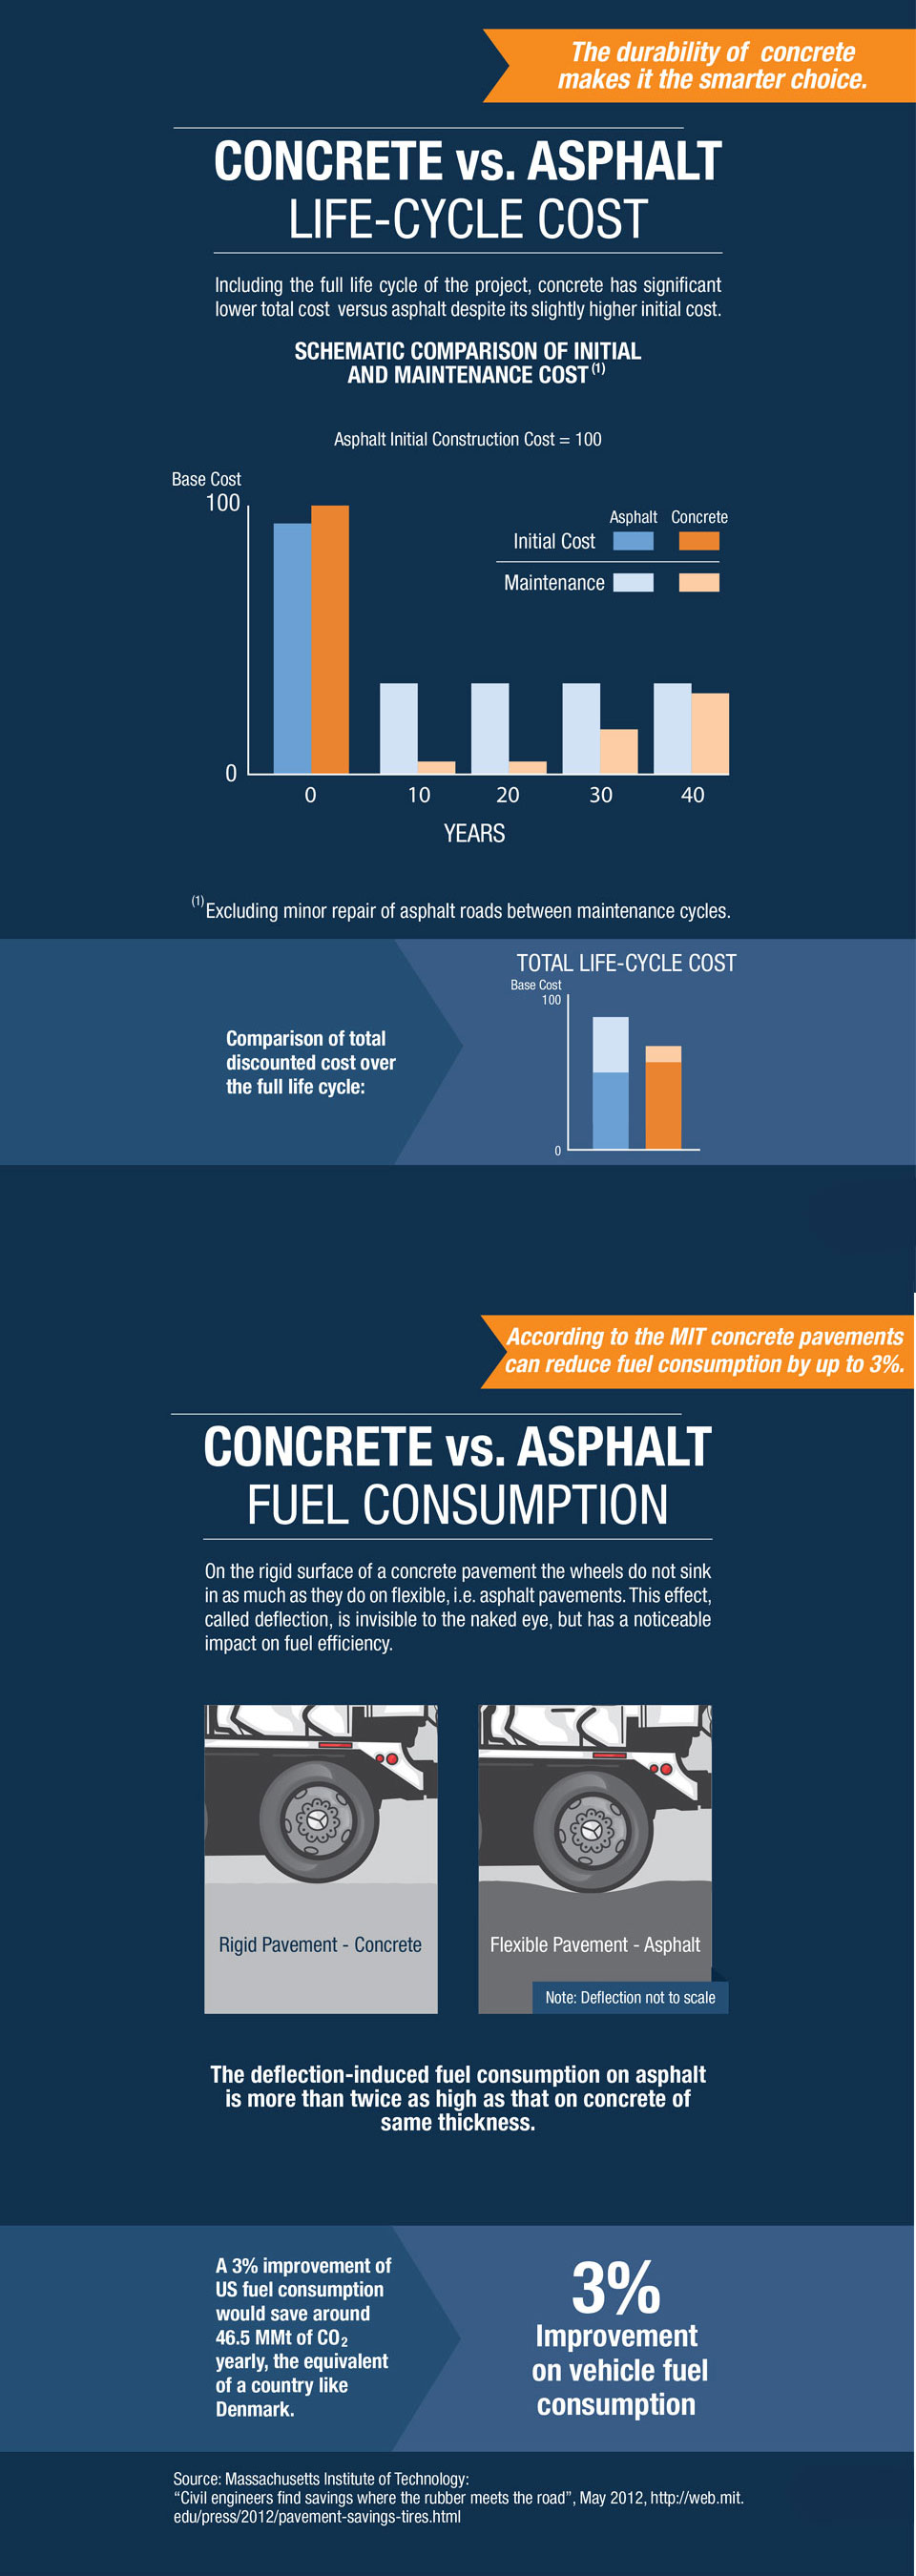 the image shows a comparison between concrete and asphalt